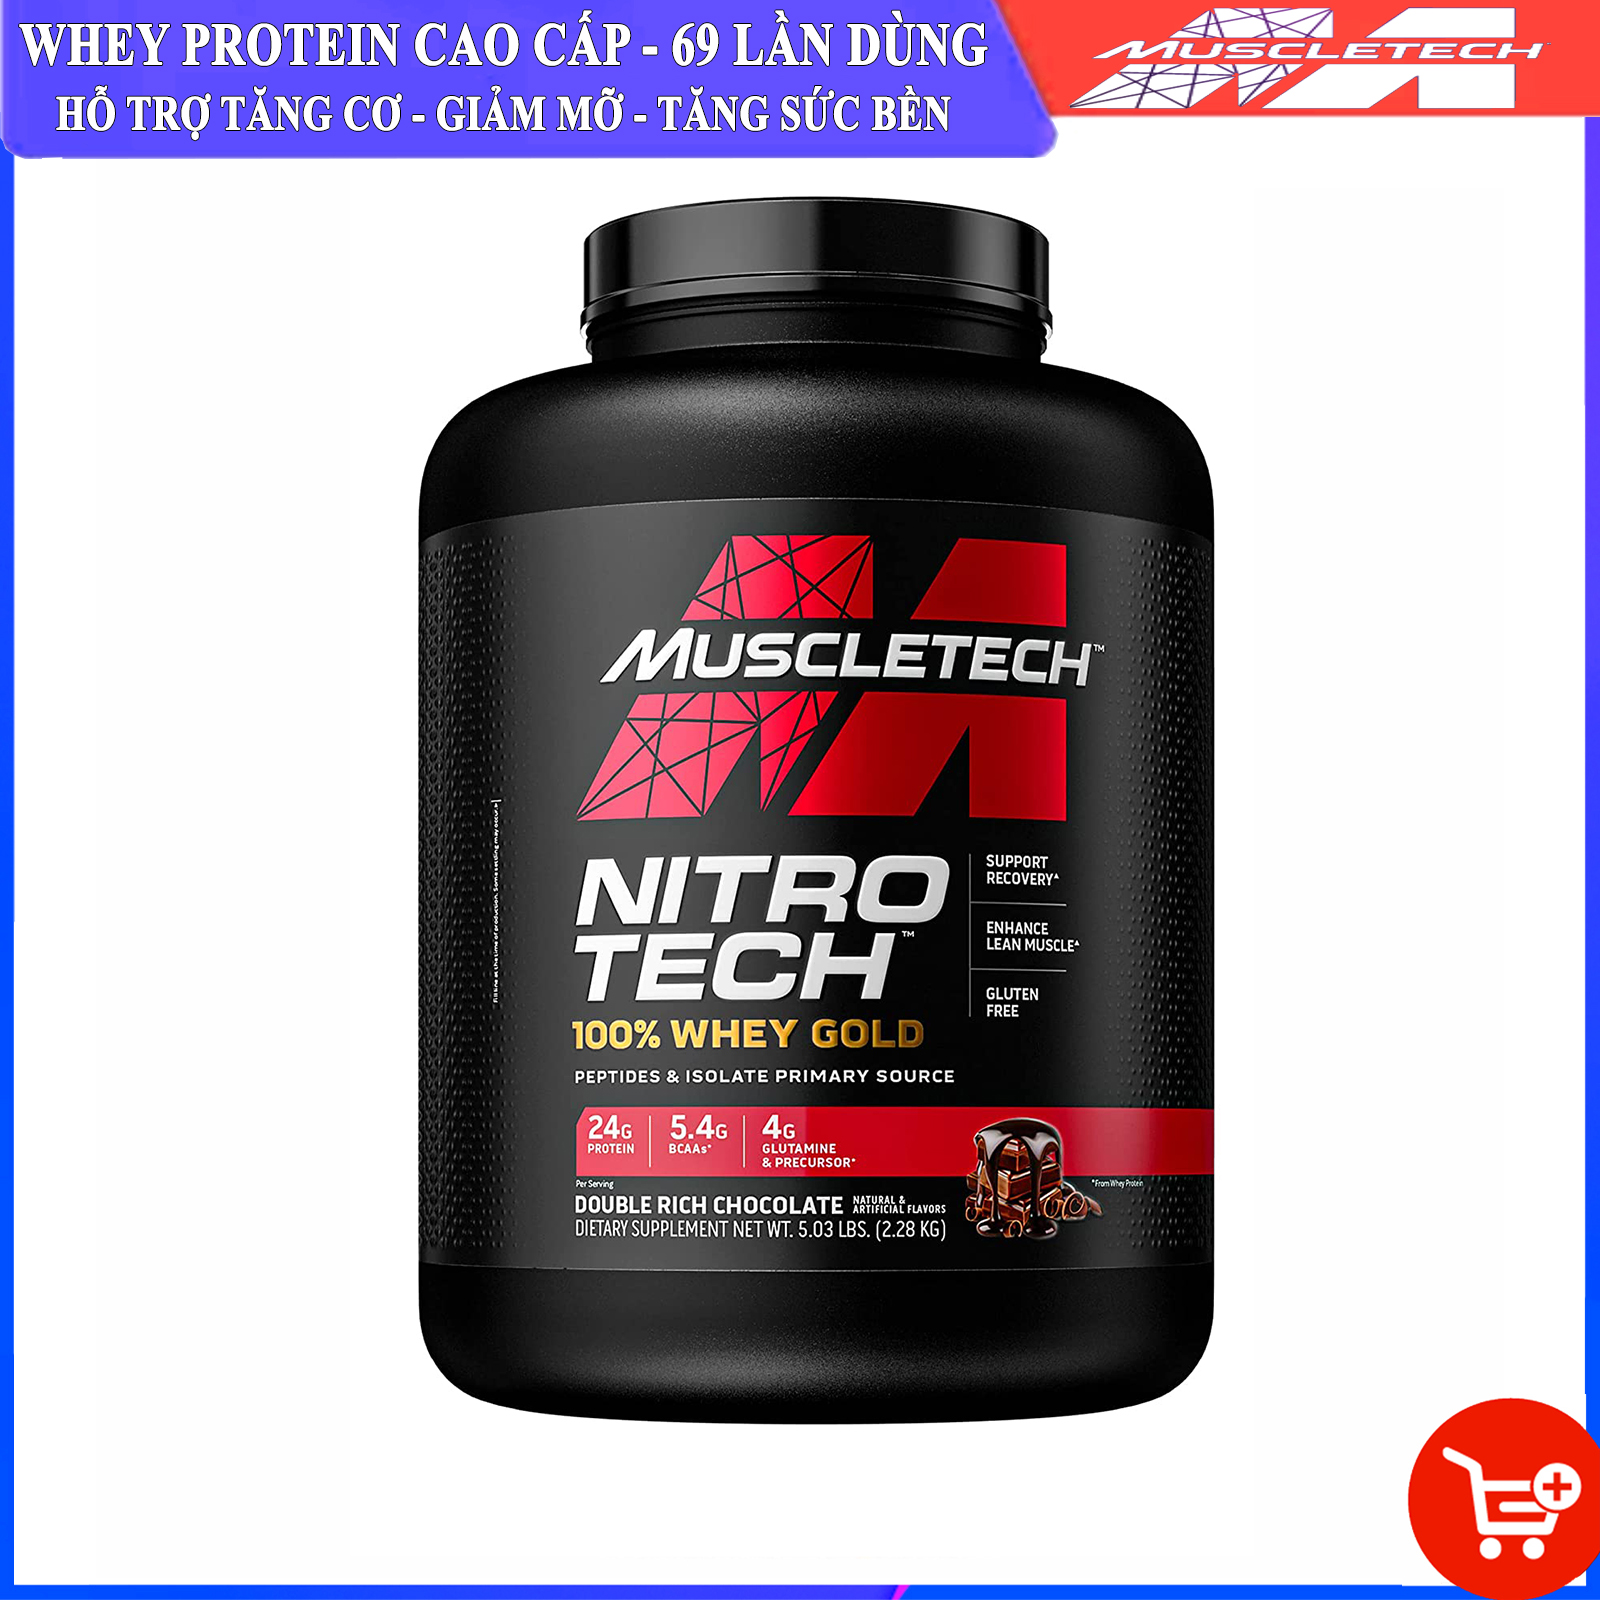 Sữa tăng cơ giảm mỡ Nitro Tech 100% Whey Gold của Muscle tech hộp 69 lần hỗ trợ tăng cơ giảm cân đốt mỡ tăng sức bền sức mạnh cho người tập gym và chơi thể thao thumbnail